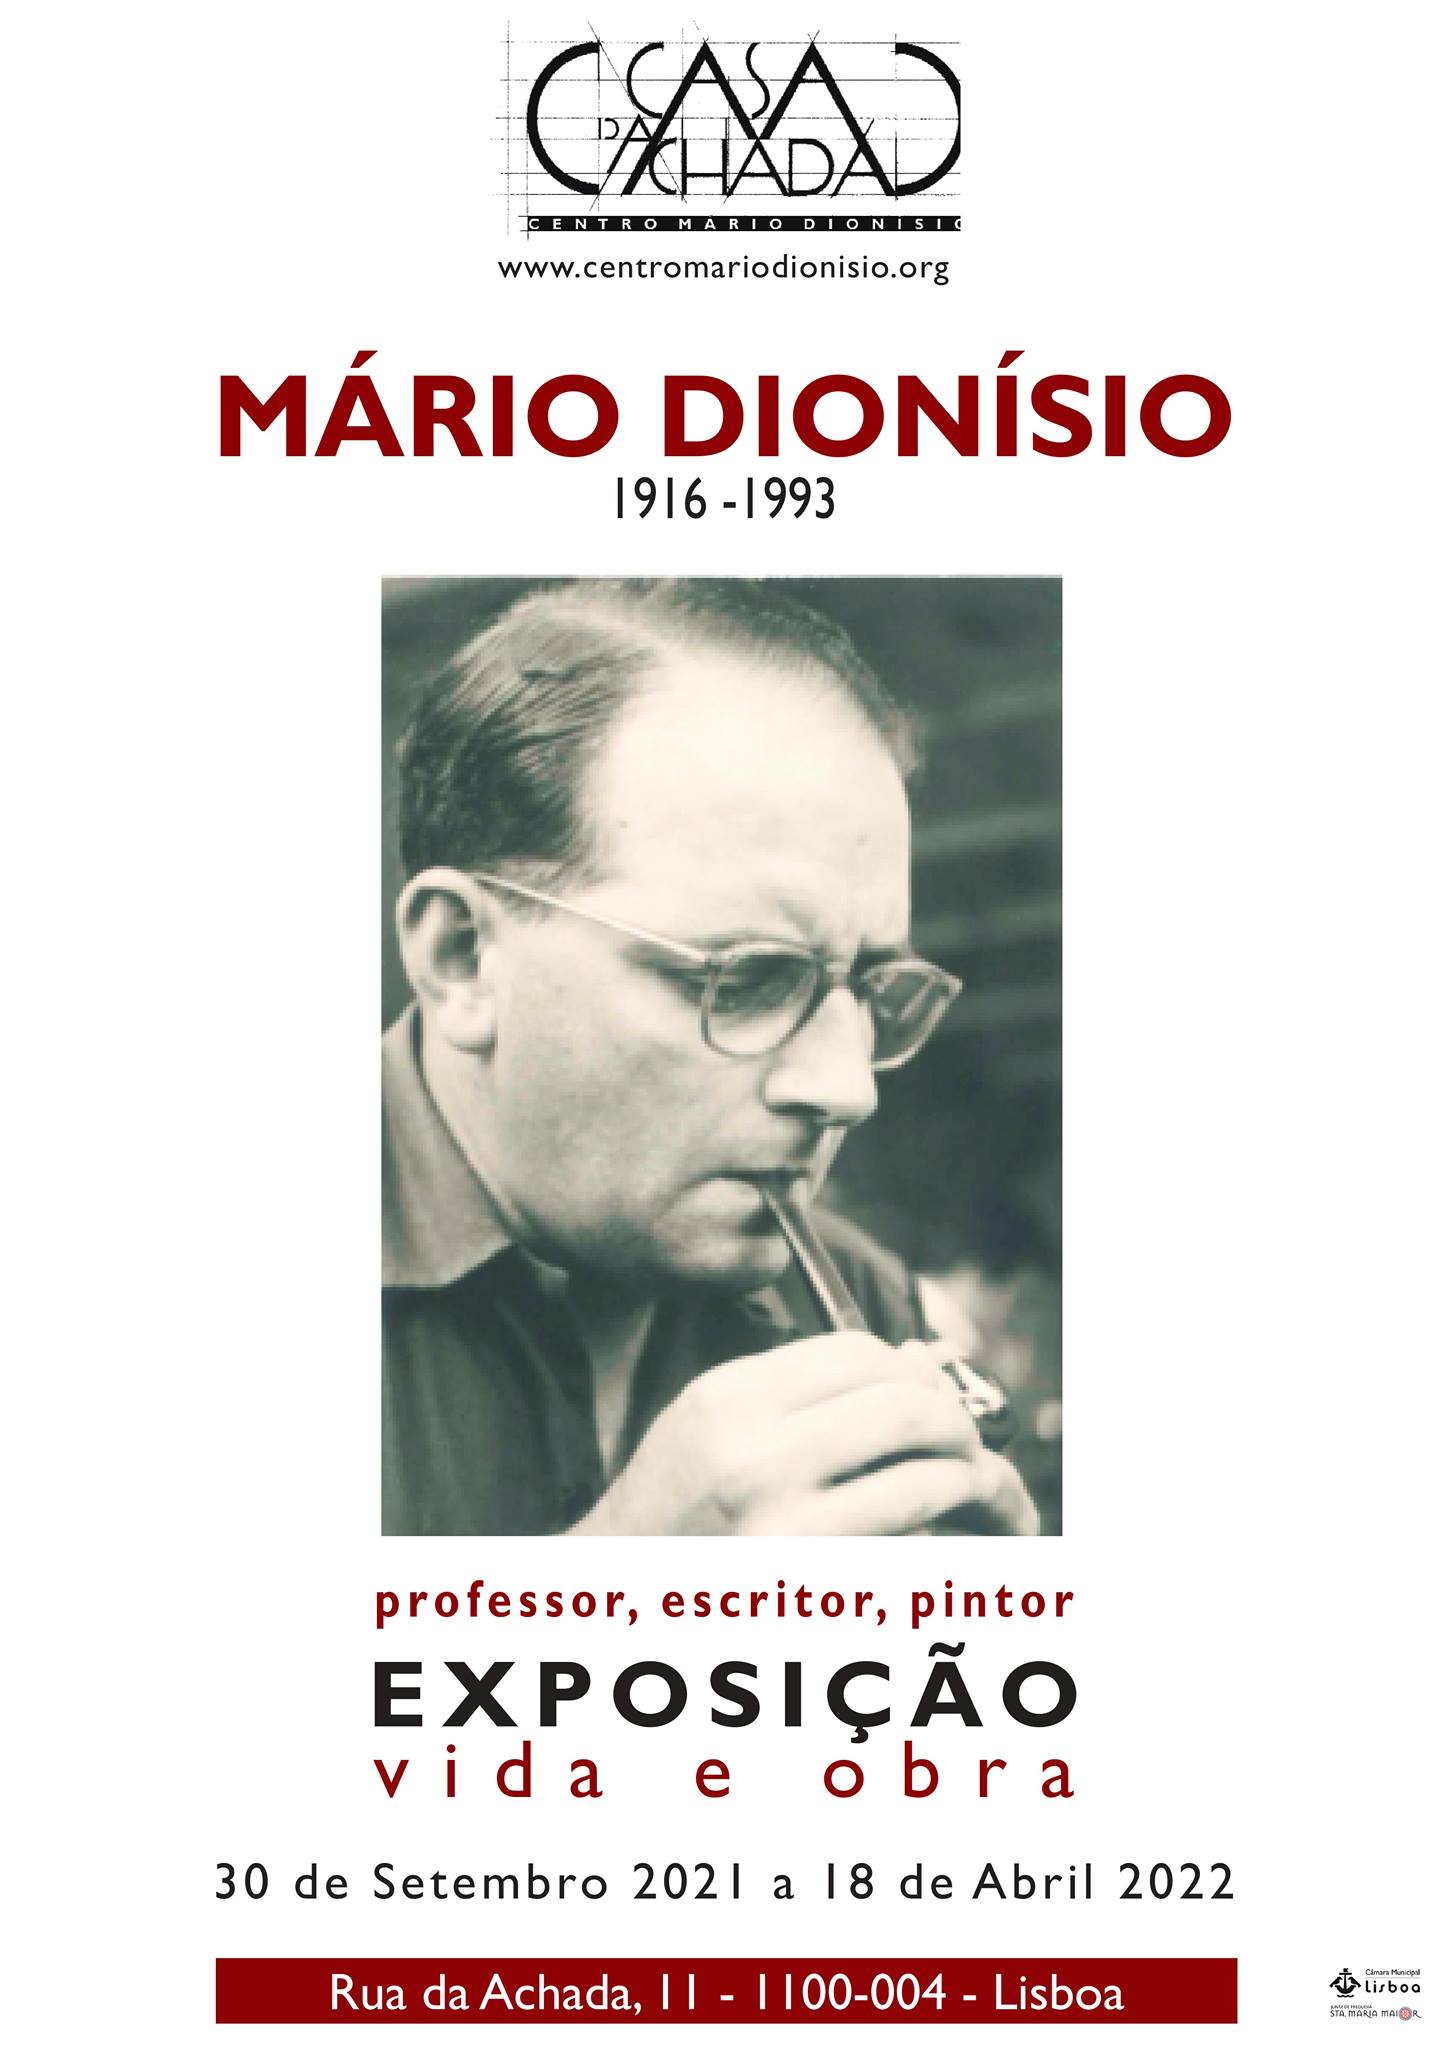 Exposição: Mário Dionísio - vida e obra